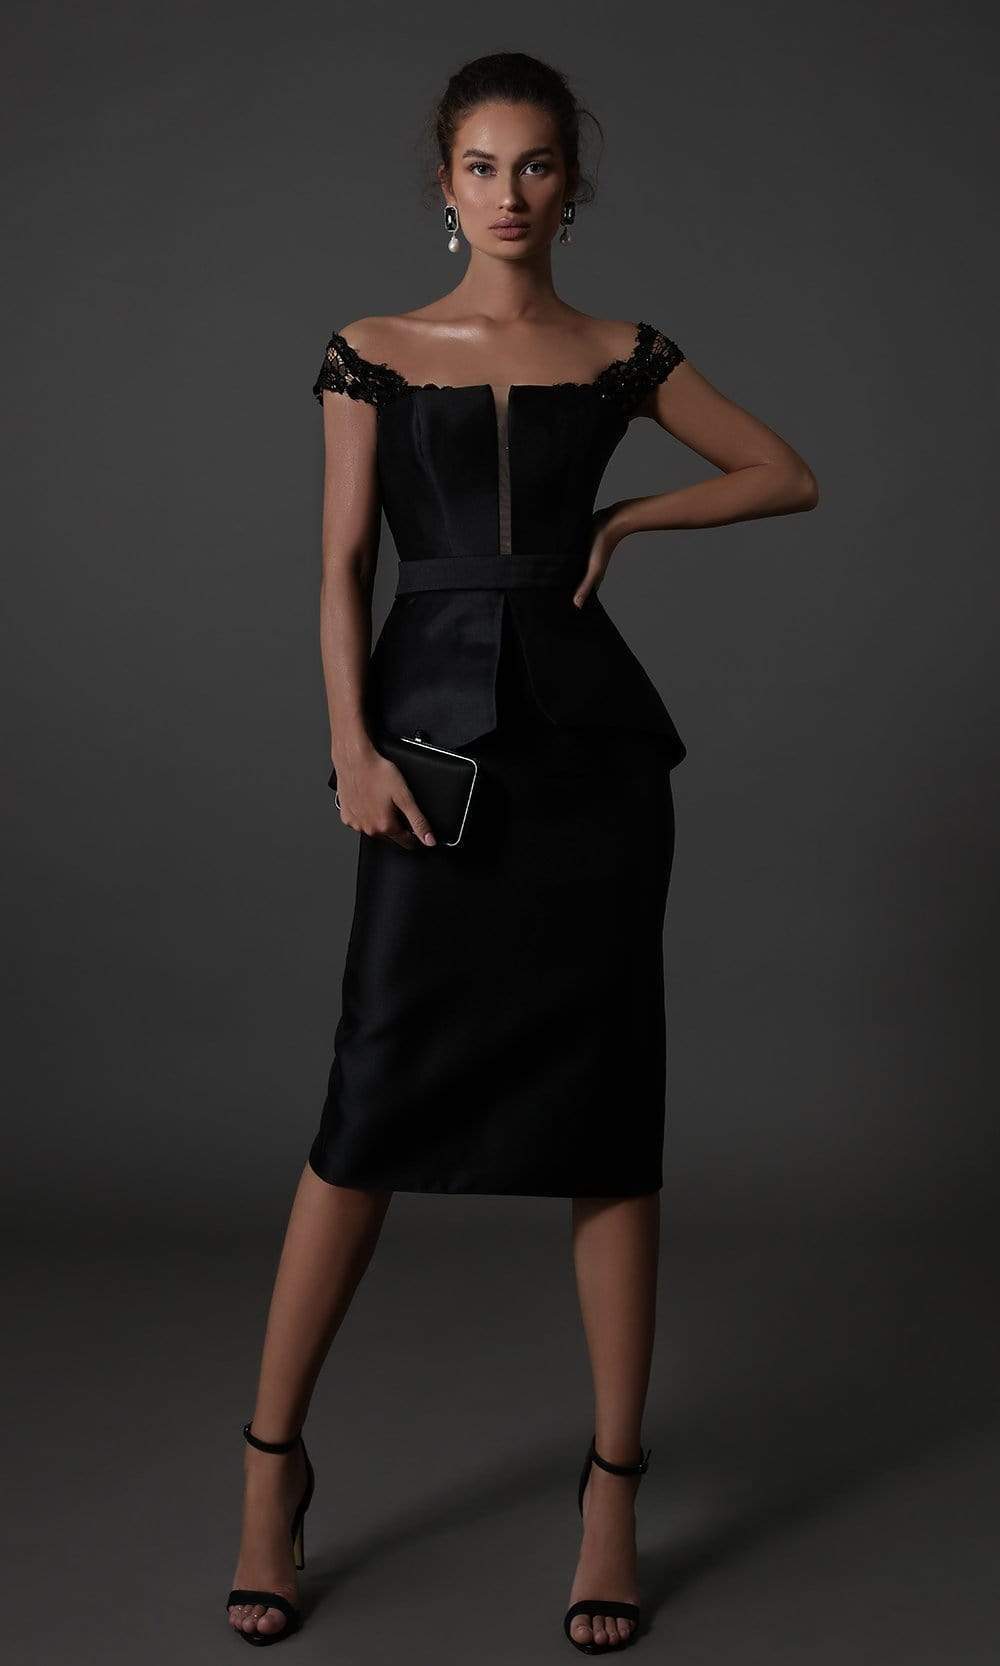 Tarik Ediz - Lace Off Shoulder Sheath Dress 96134 - 1 pc Black In Size 12 Available CCSALE